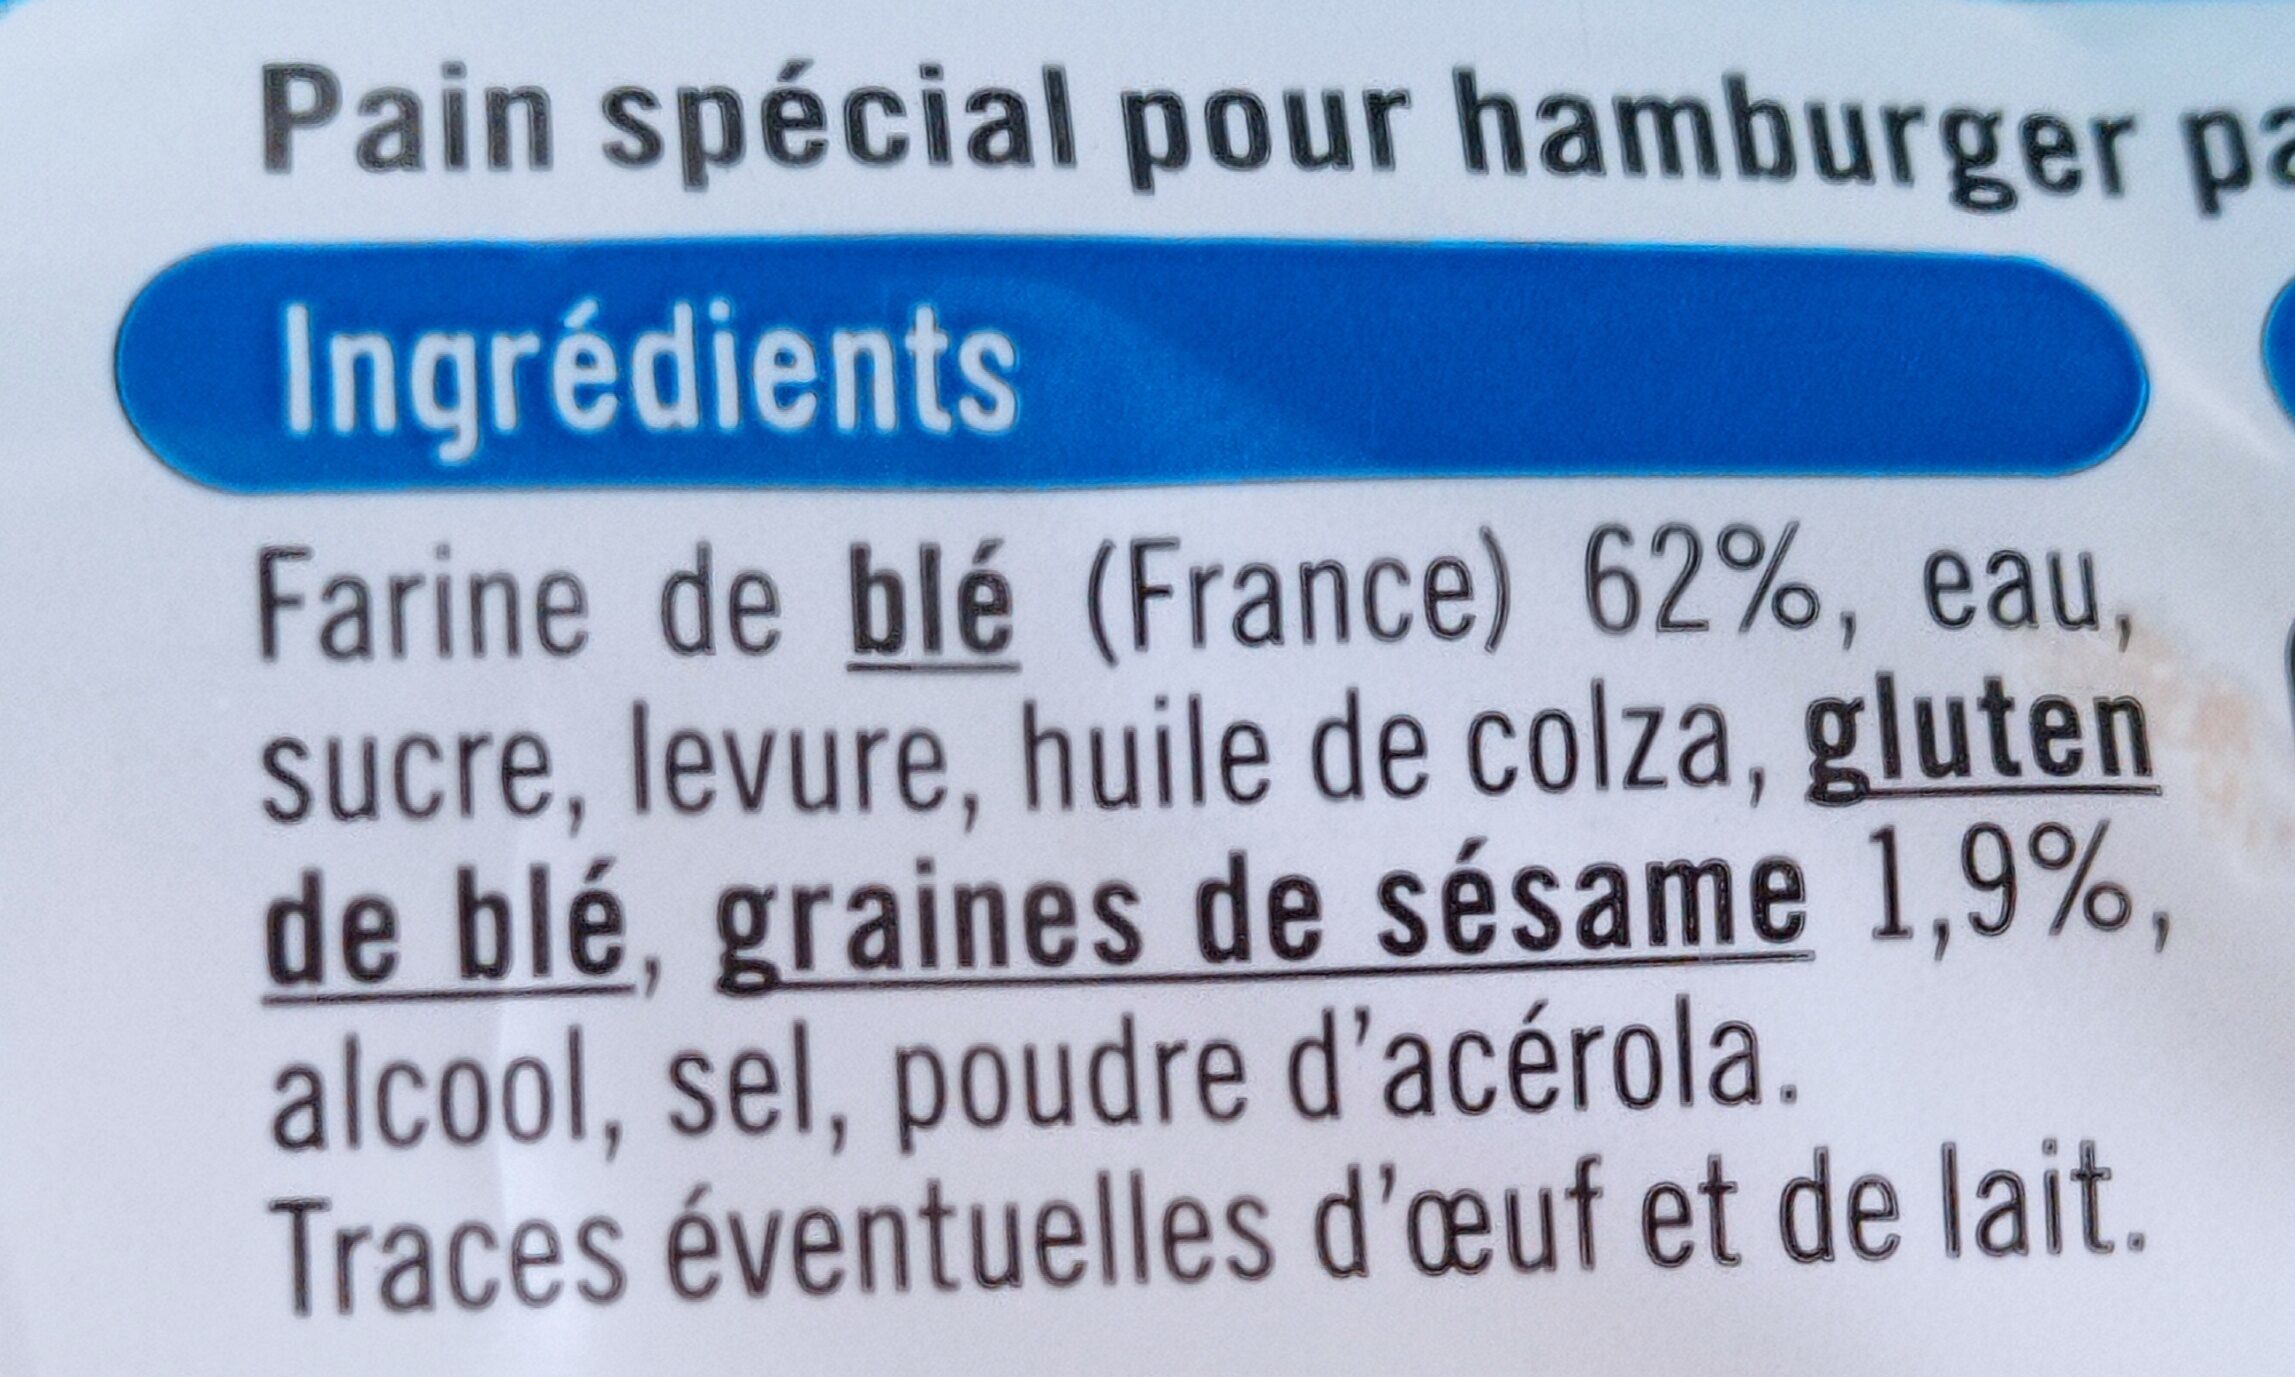 Pains pour hamburger - Ingredients - fr